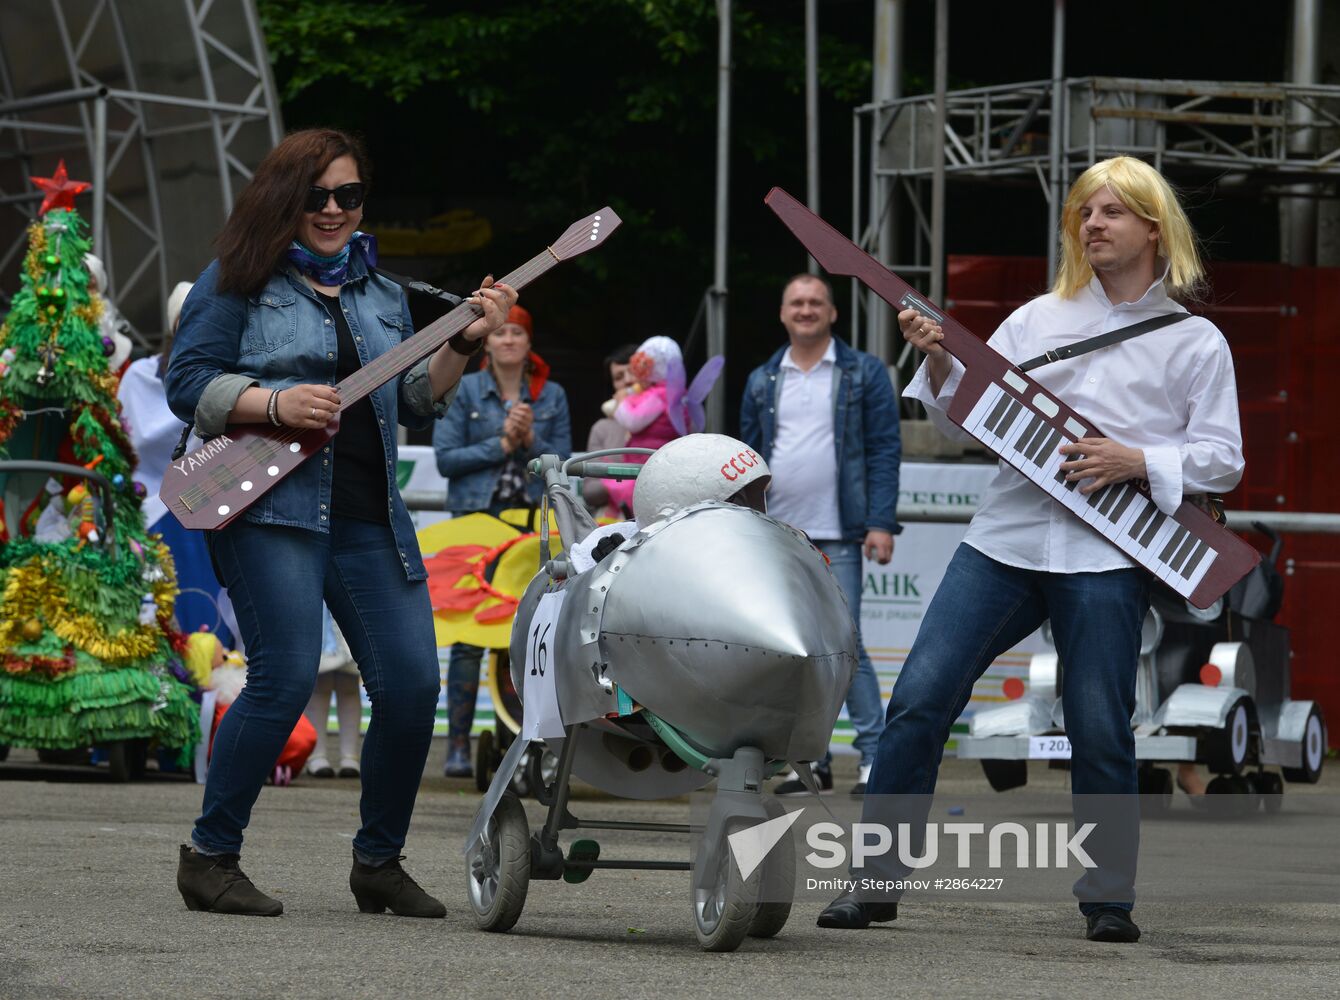 Stavropol hosts stroller parade